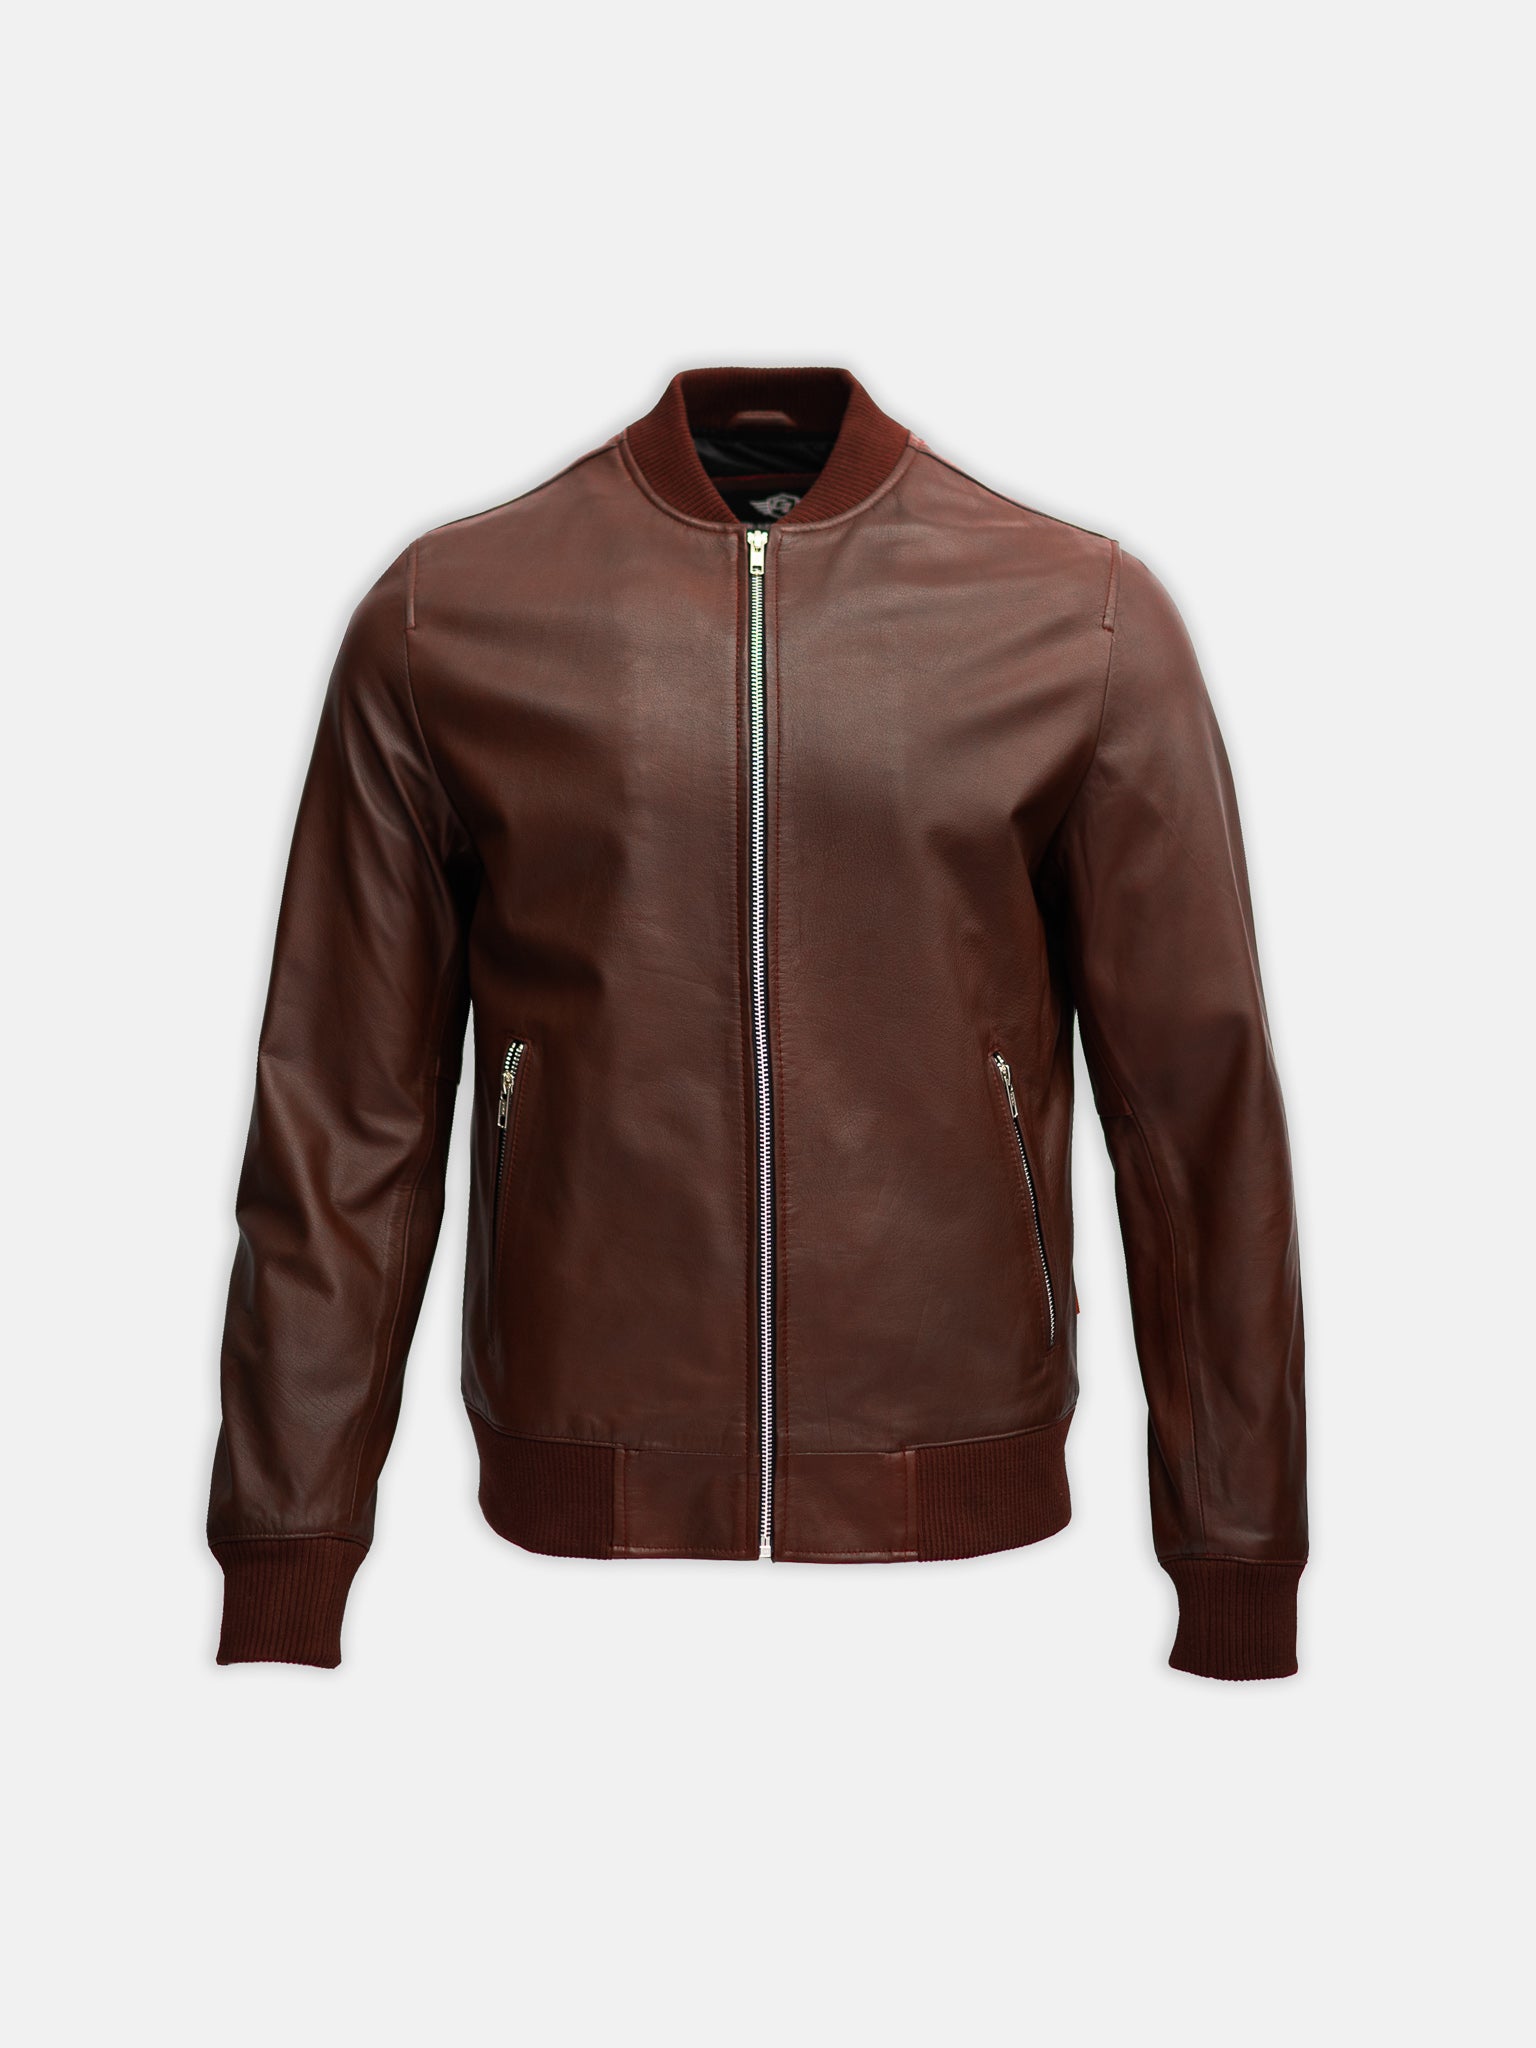 burgundy leather bomber jacket